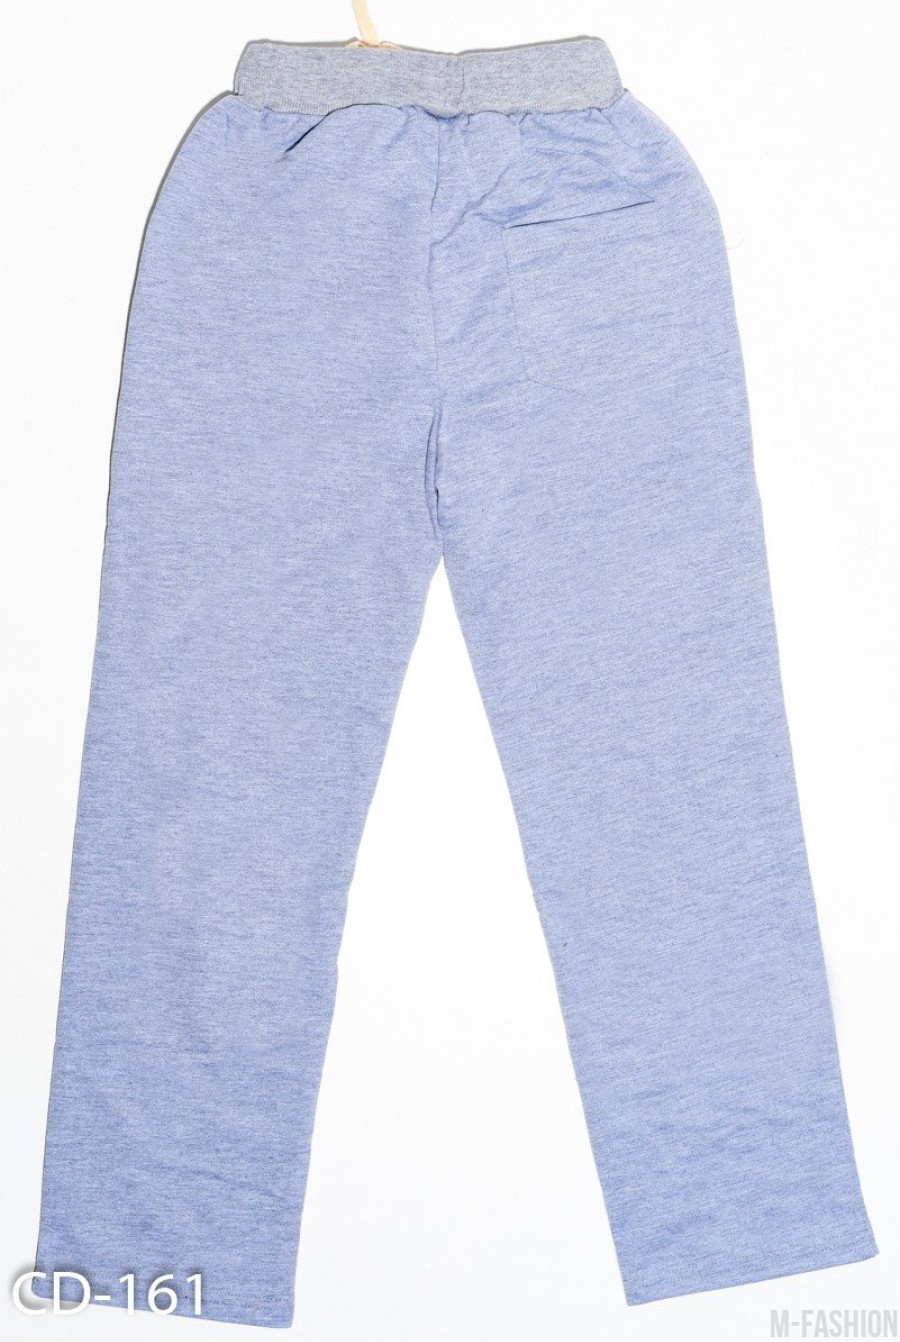 Серые трикотажные штаны с принтом на накладных карманах- Фото 2